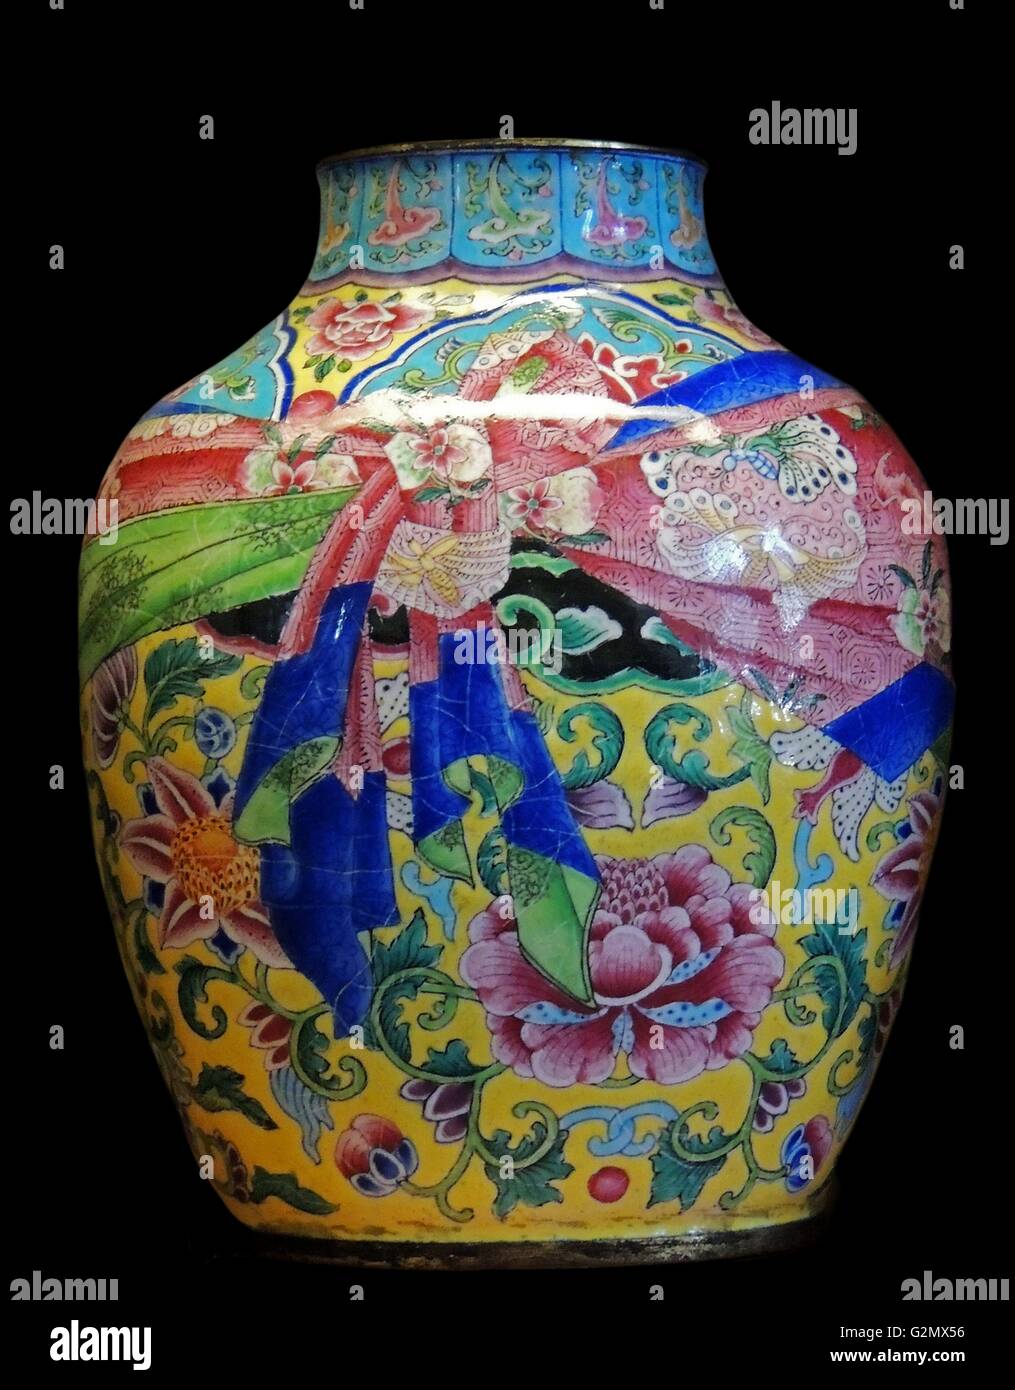 Jarrón de cobre decorados con esmaltes pintados con flores y una envoltura de seda. Qianlong de la dinastía Qing, mark y período1736-95 (AD) Foto de stock